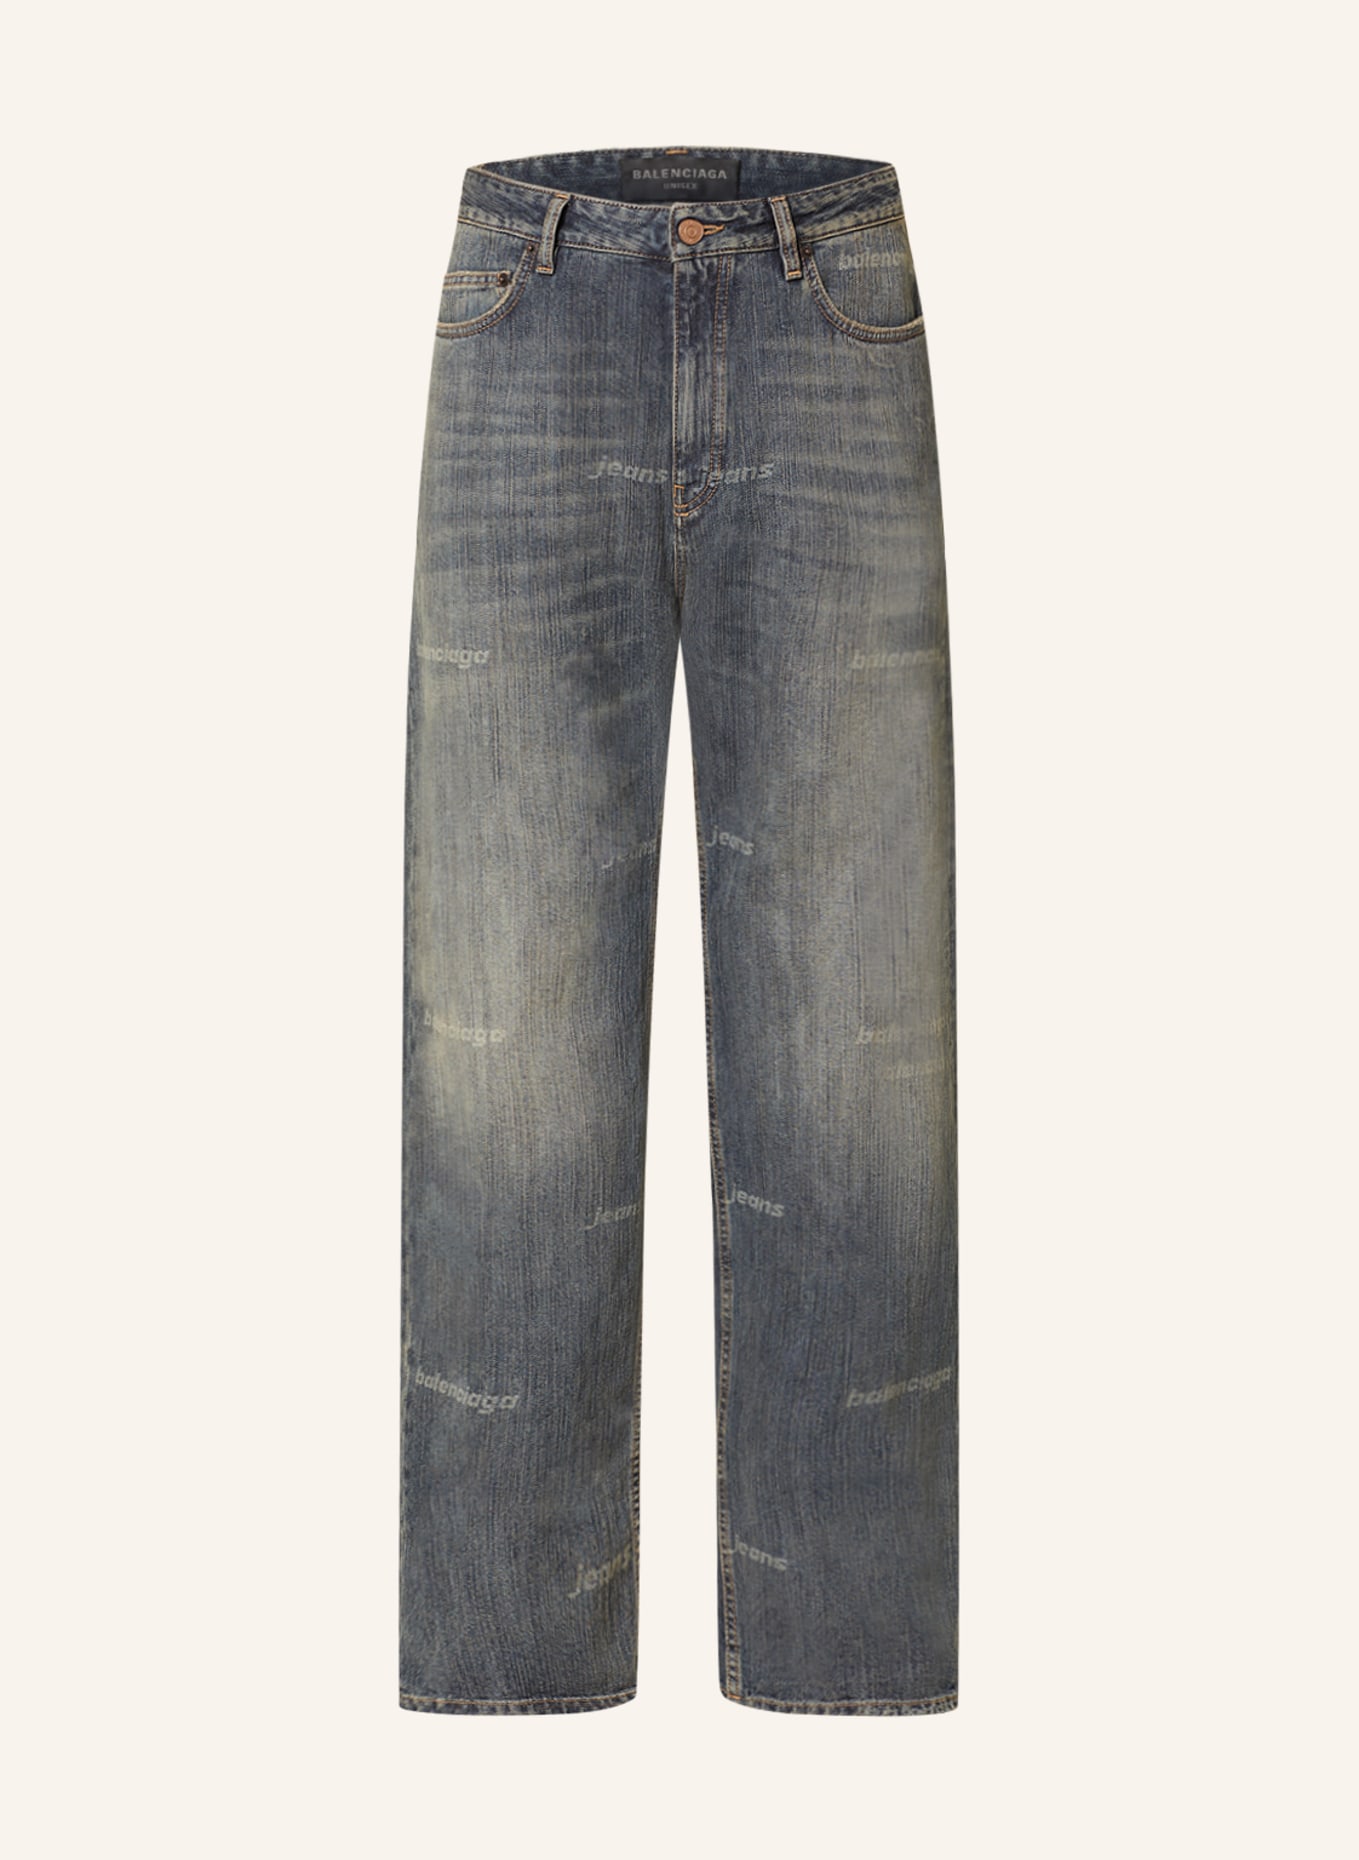 BALENCIAGA Jeans Medium Fit, Farbe: 4036 BLUE LIGHT RING (Bild 1)